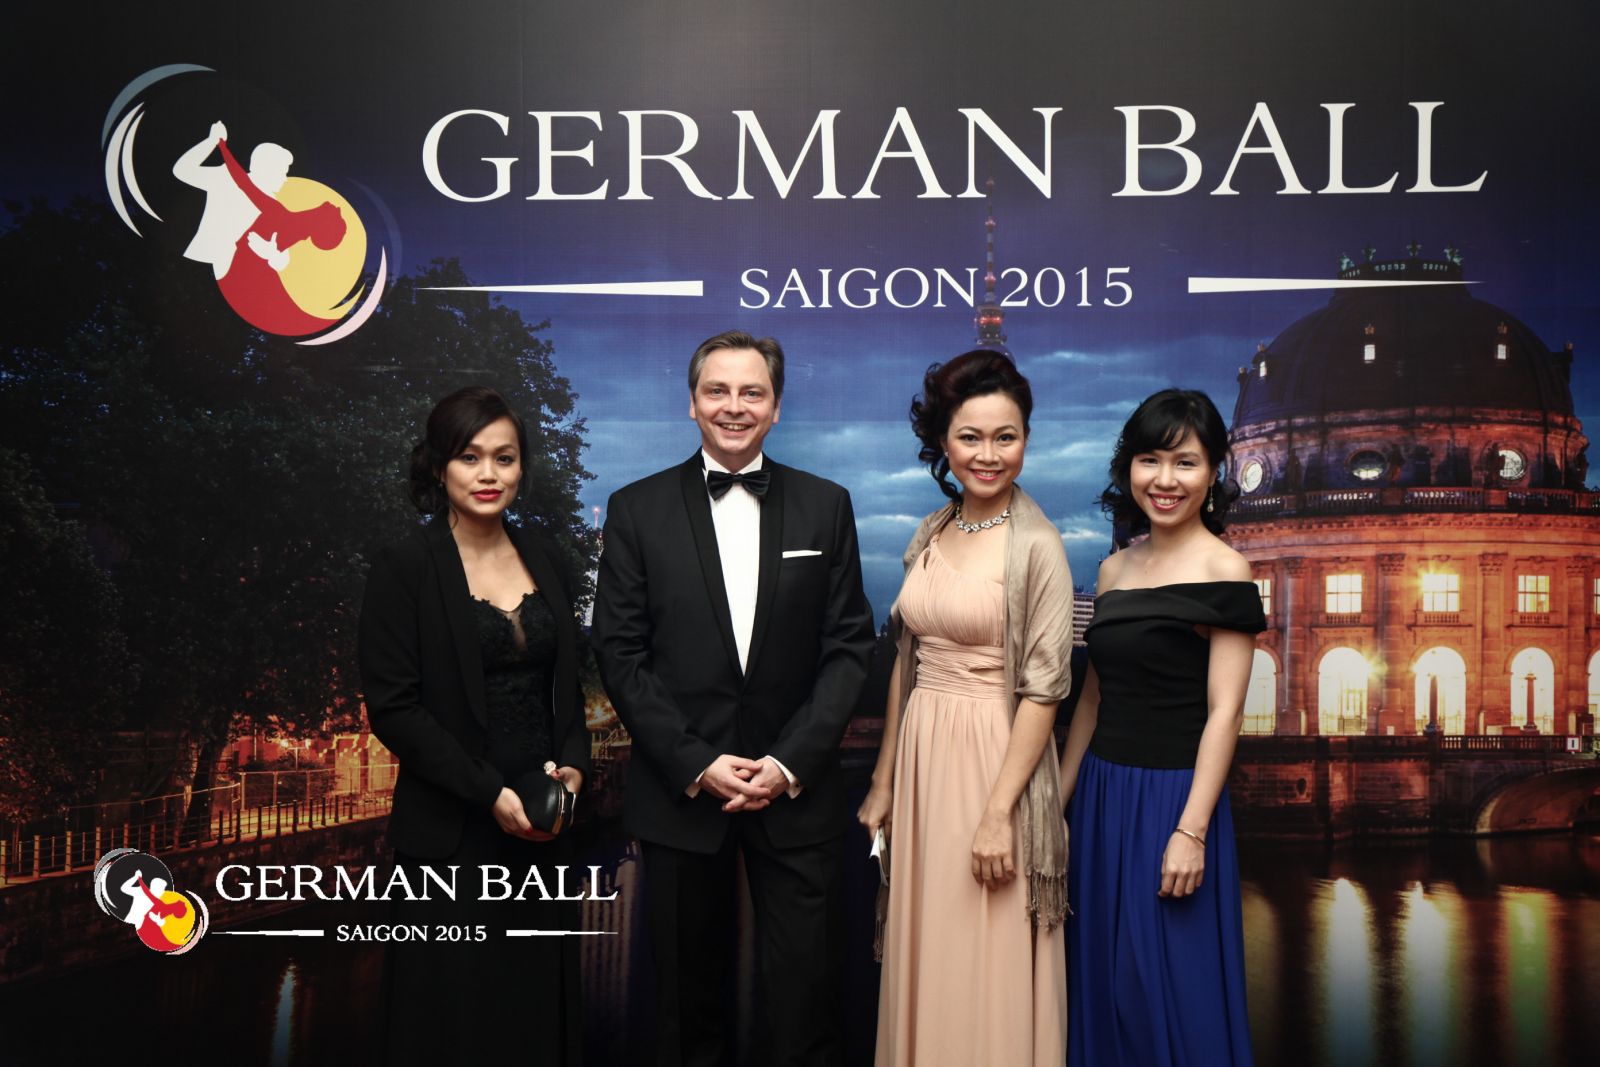 Nhìn lại thành công của Dạ vũ German Ball Saigon 2015